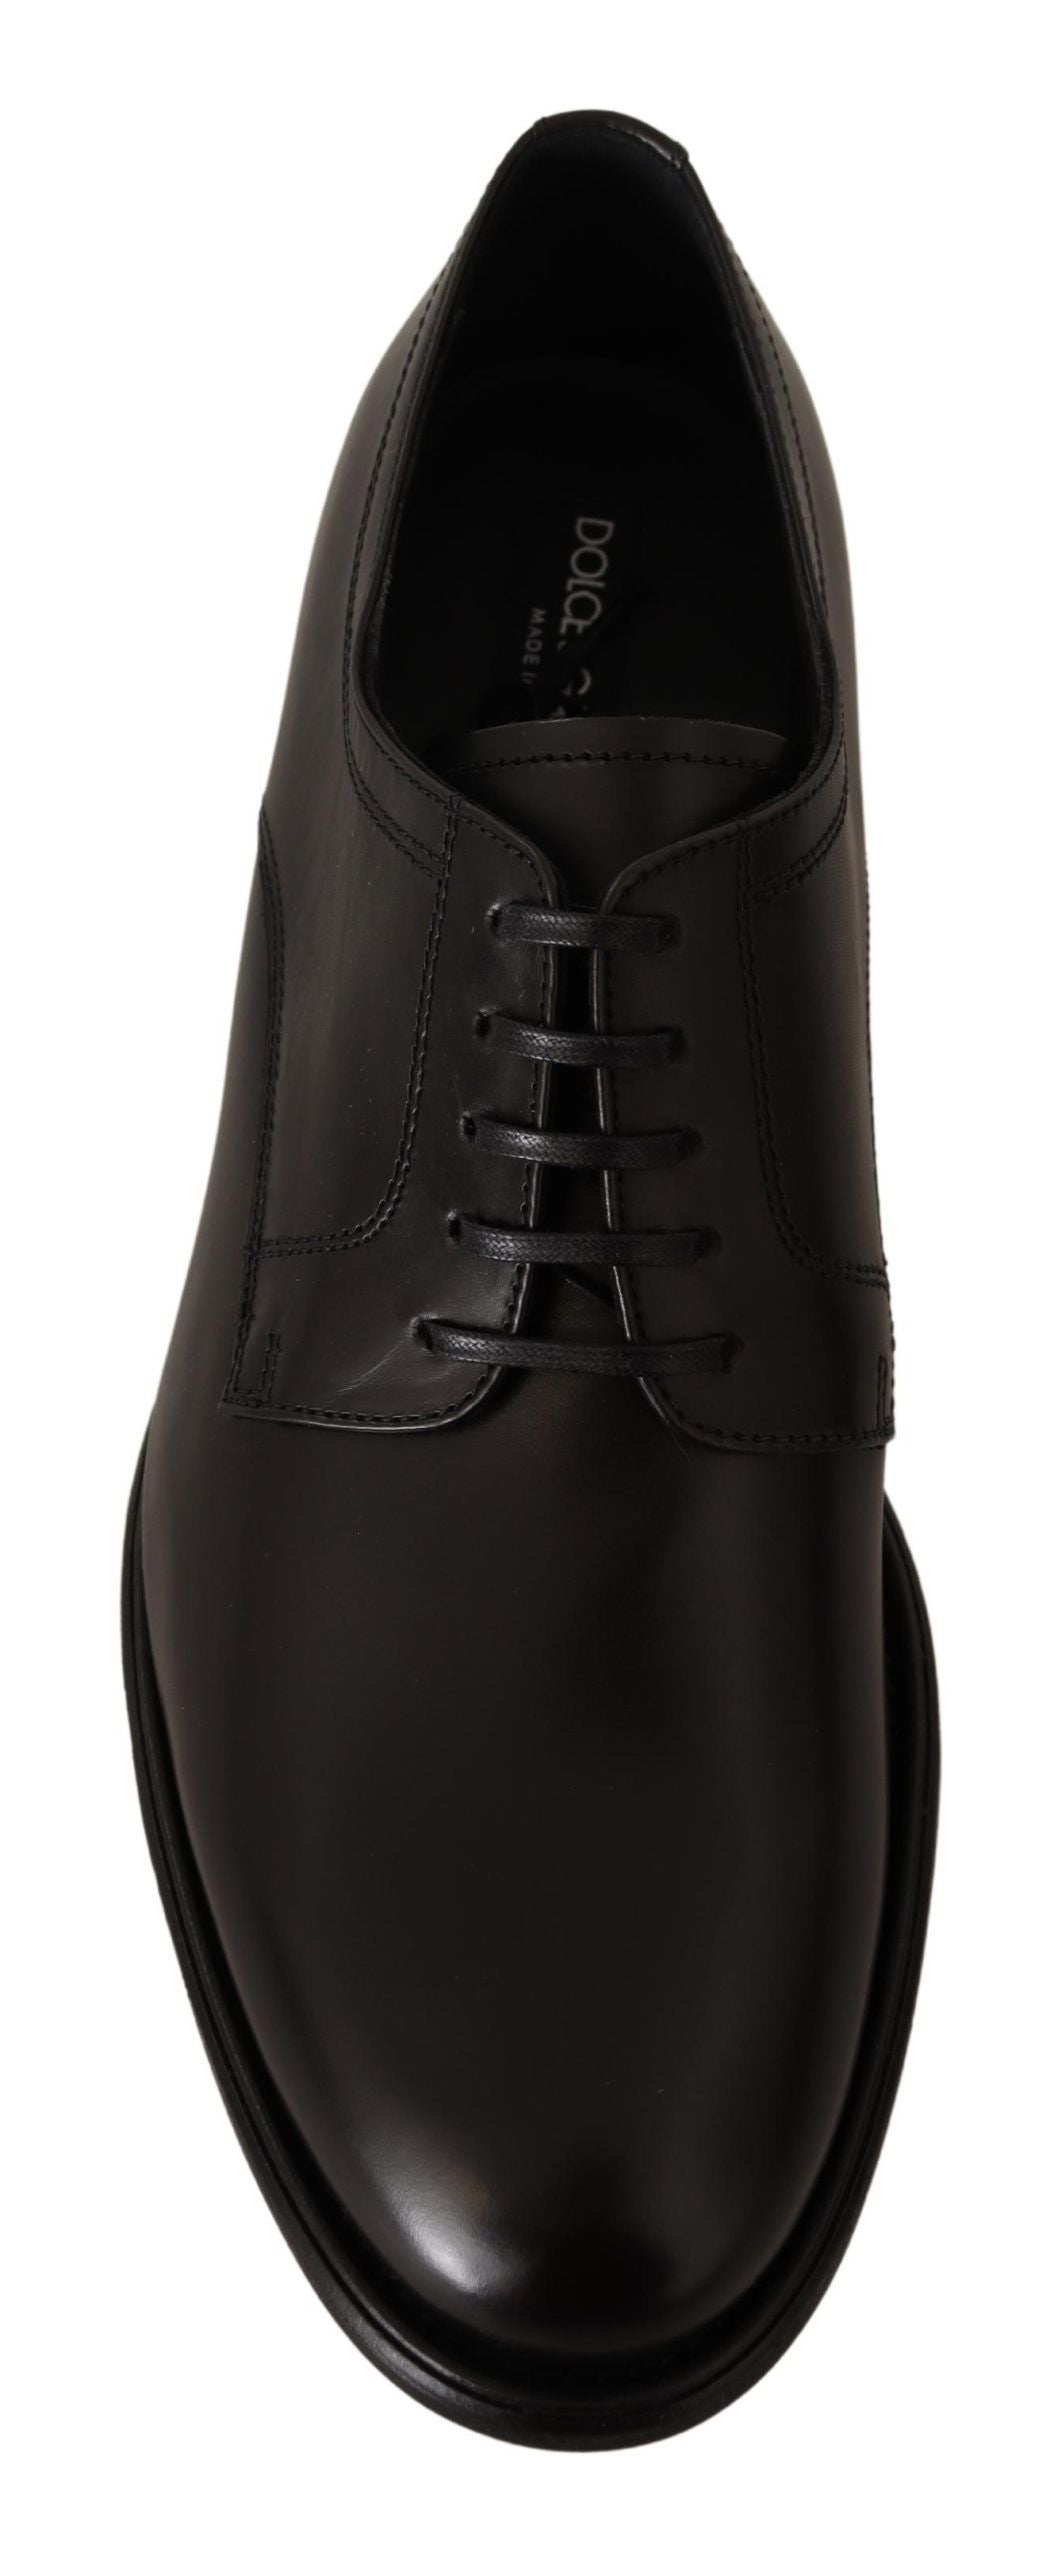 Dolce & Gabbana Elegant Black Leather Formal Derby Shoes